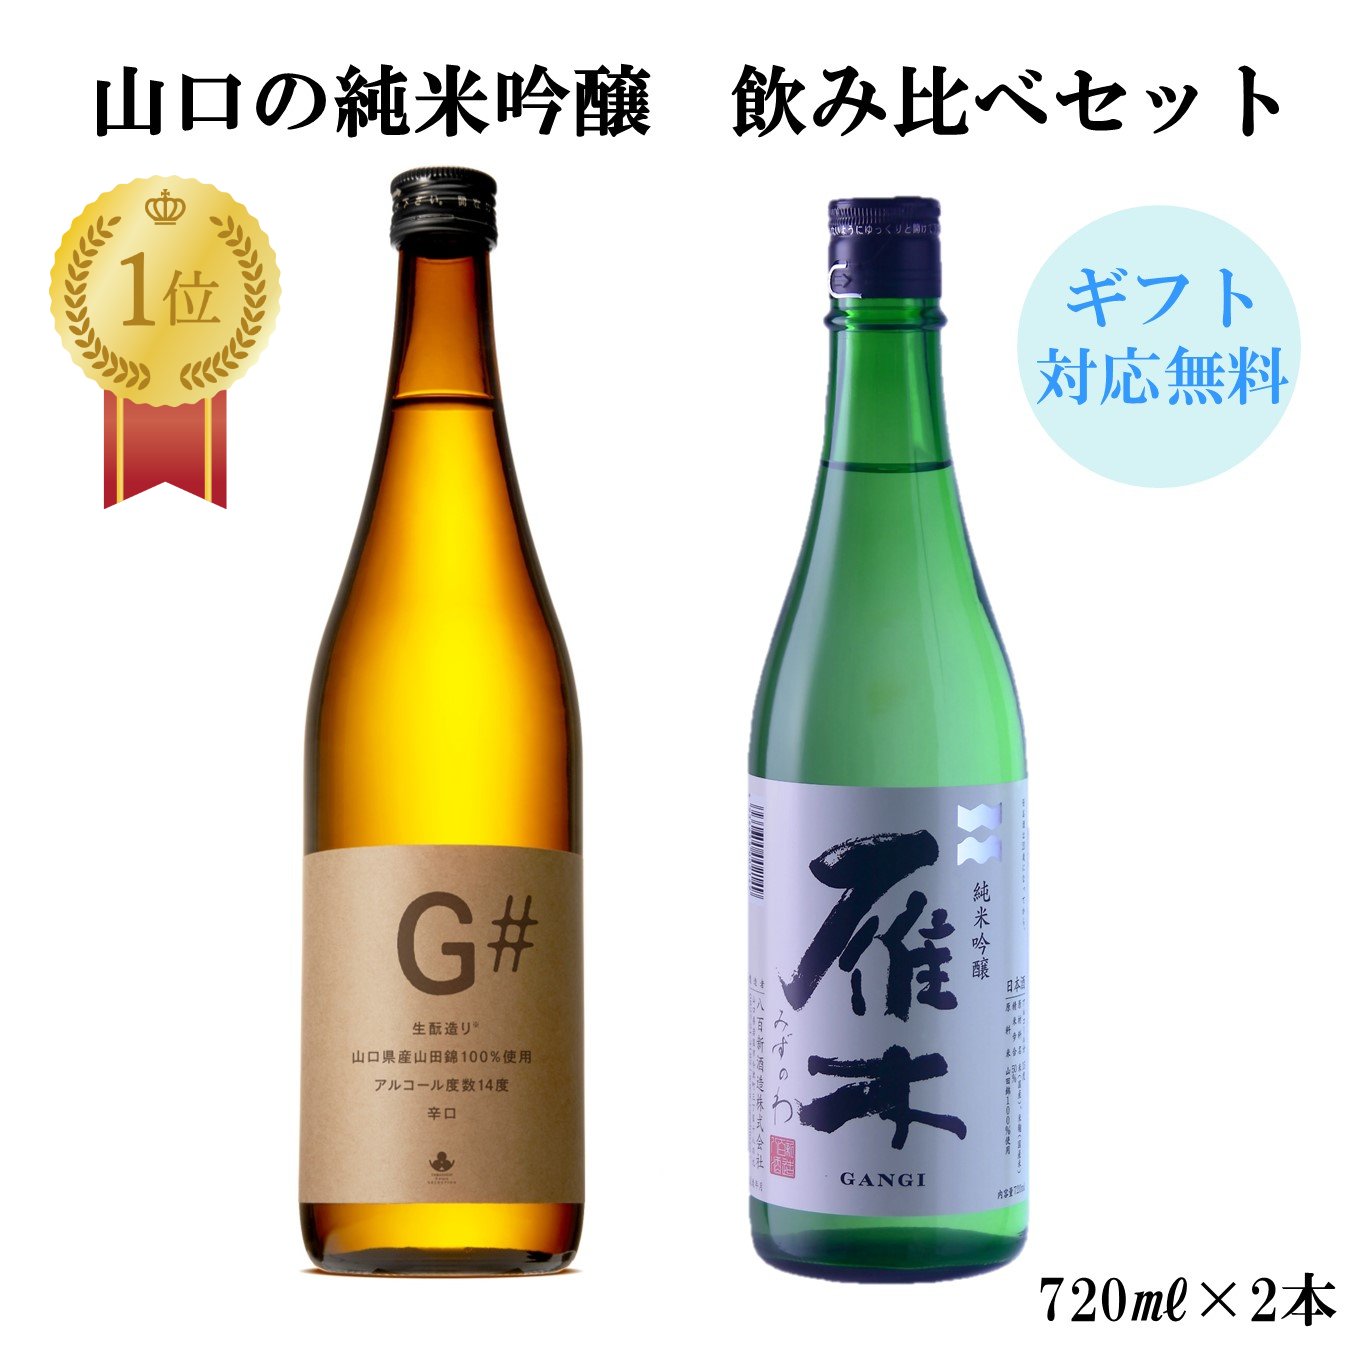 山口県 の 日本酒 の 飲み比べ セット！ ギフト にも おすすめ です。...